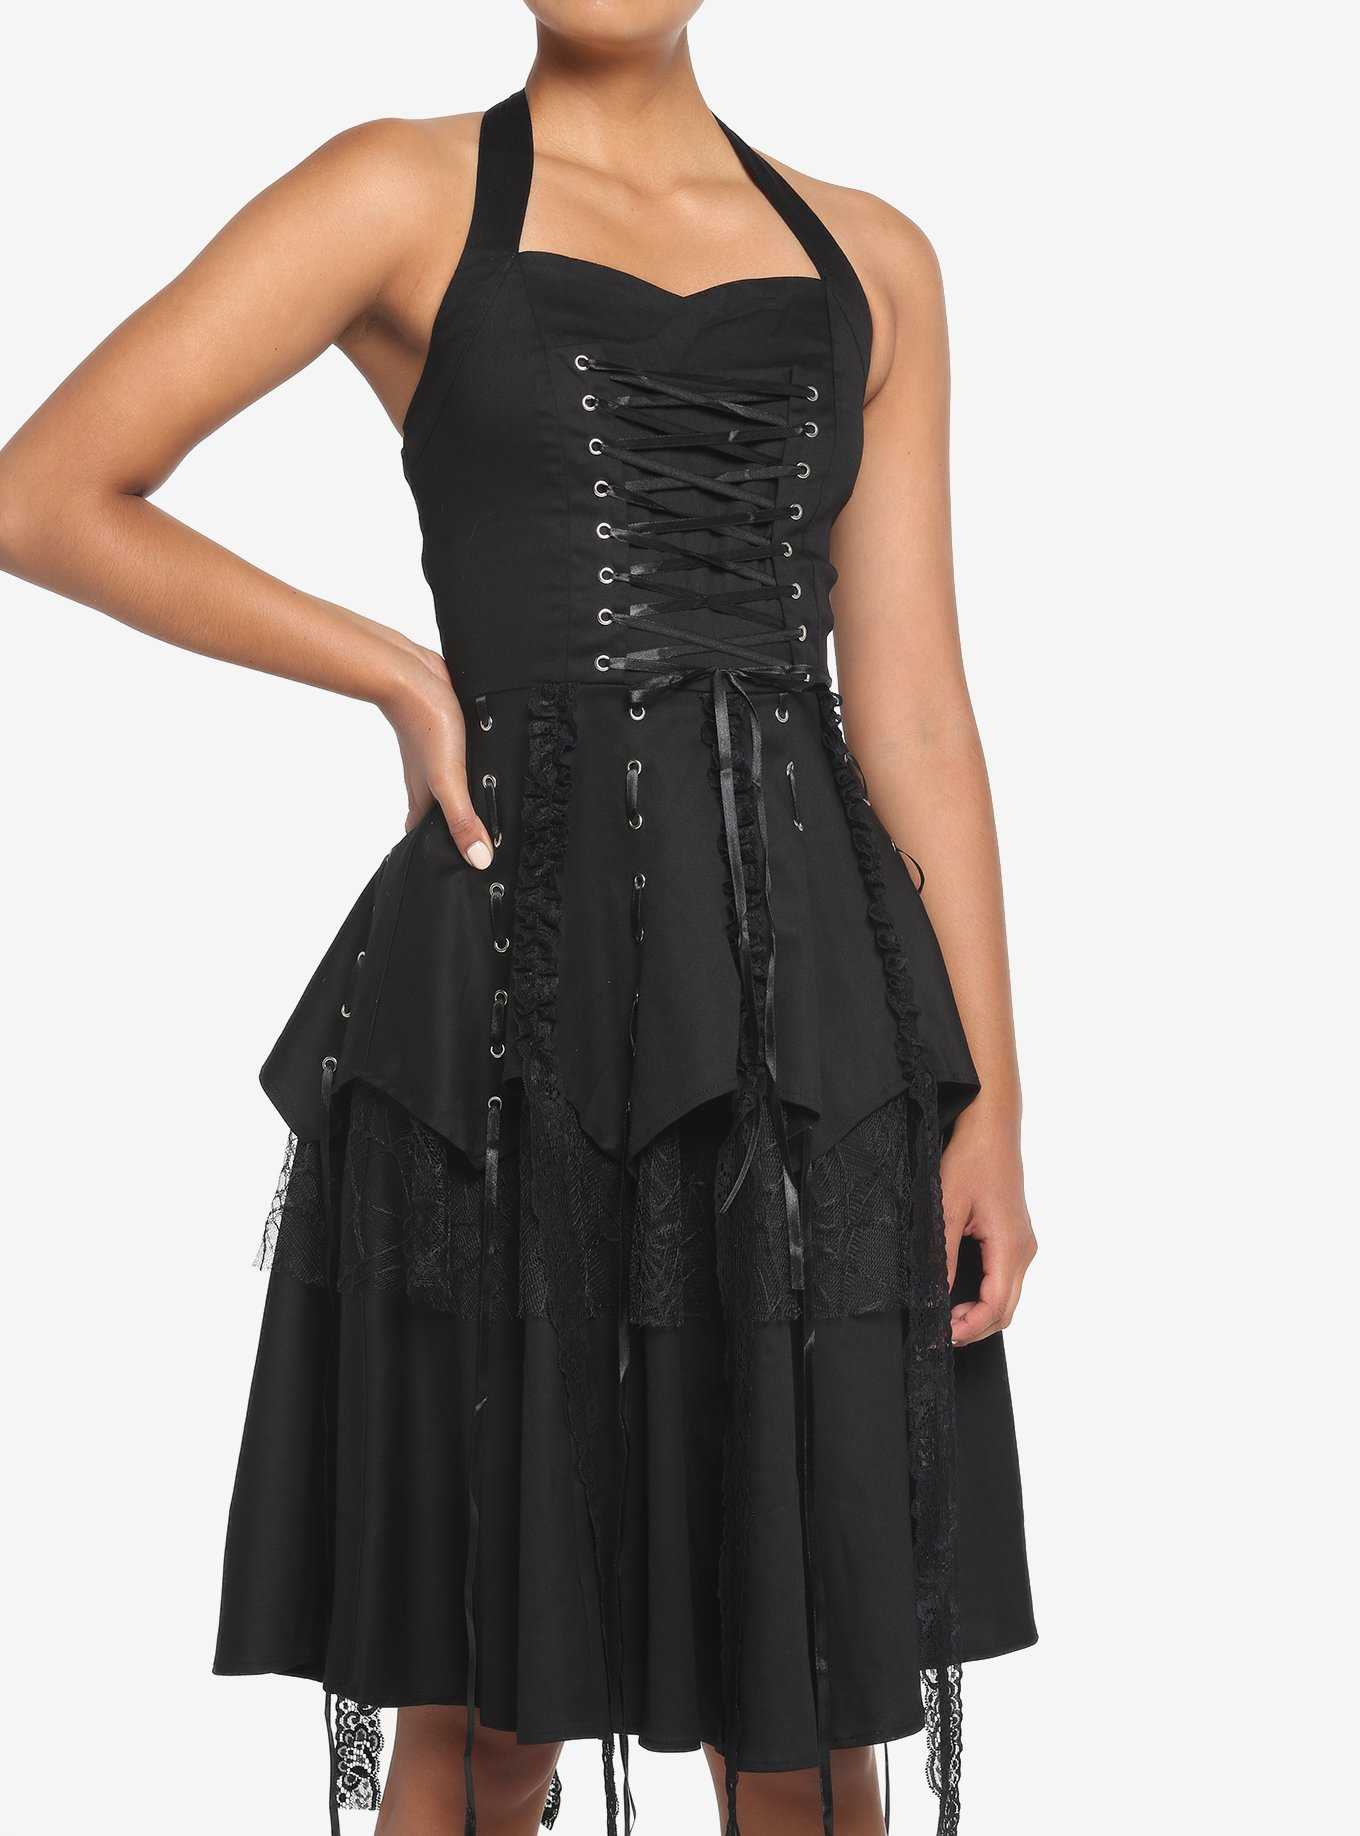 Black Dresses: Cute Black Dresses for Women